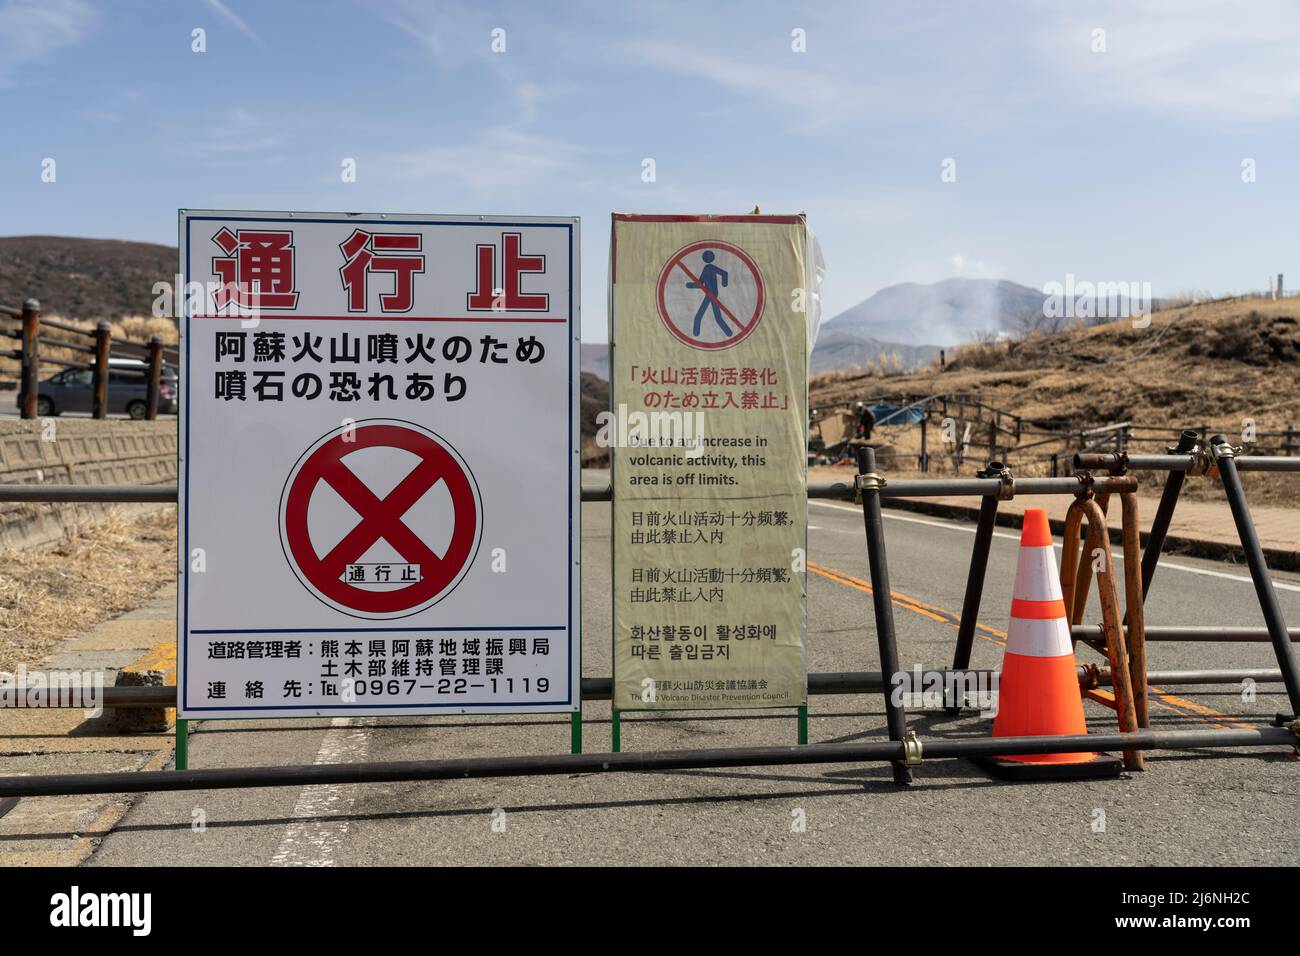 Chiusura della strada e chiusura dell'area a causa del livello di attività vulcanica. Monte, Aso, Aso City, Kumamoto, Kyushu, Giappone Foto Stock